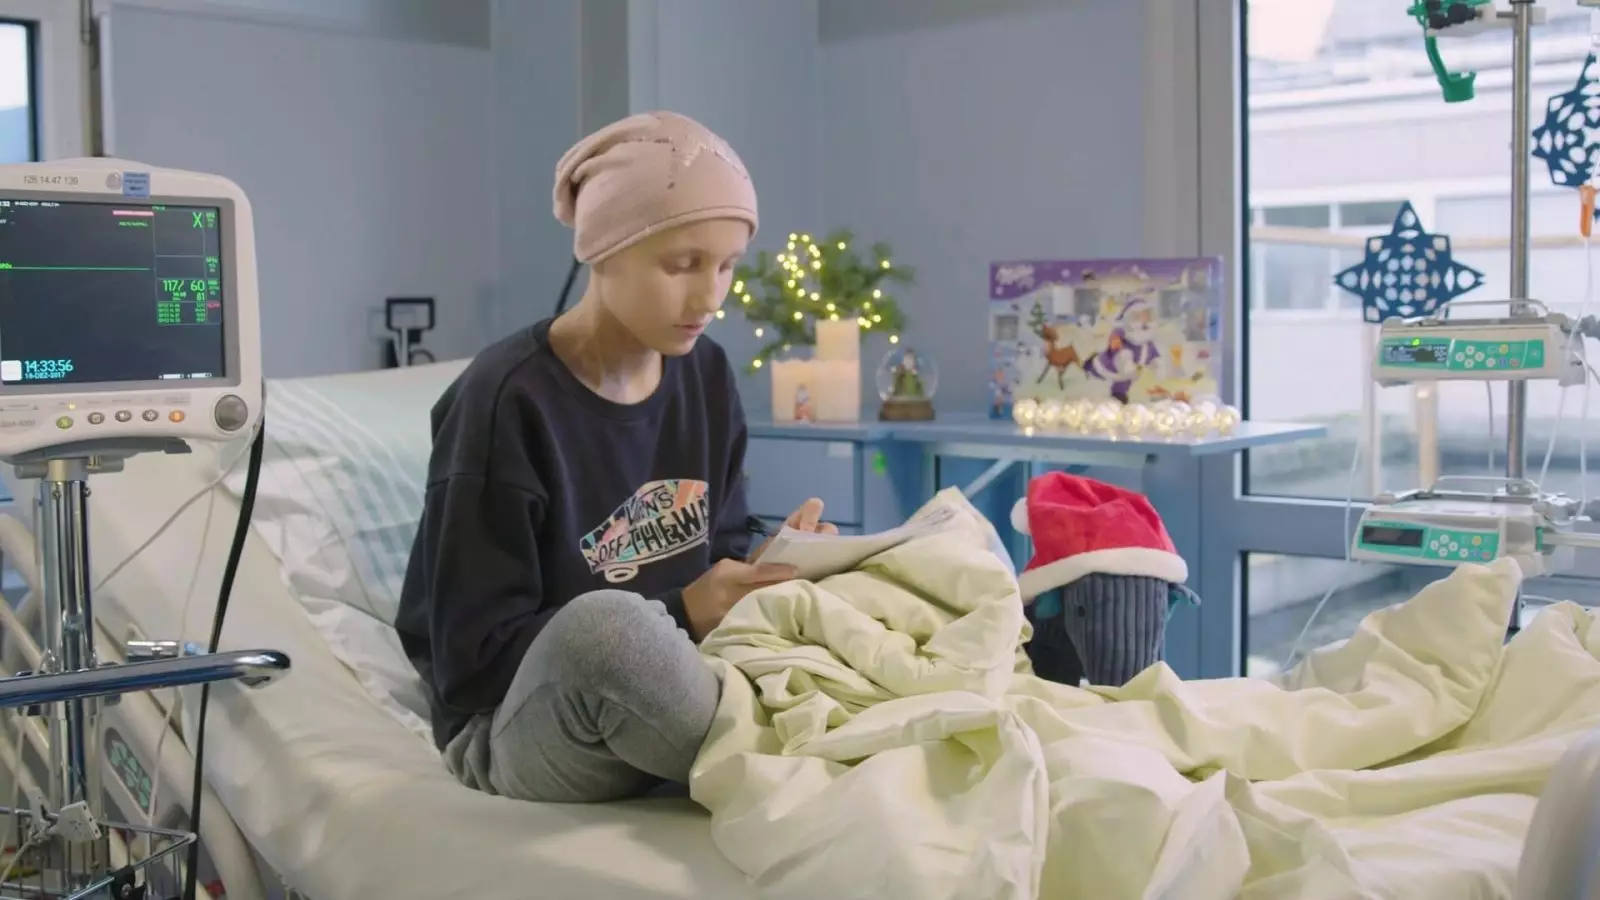 Best Company Video Gmbh Verein Für Krebskranke Kinder E.v. Facebook Film Weihnachten